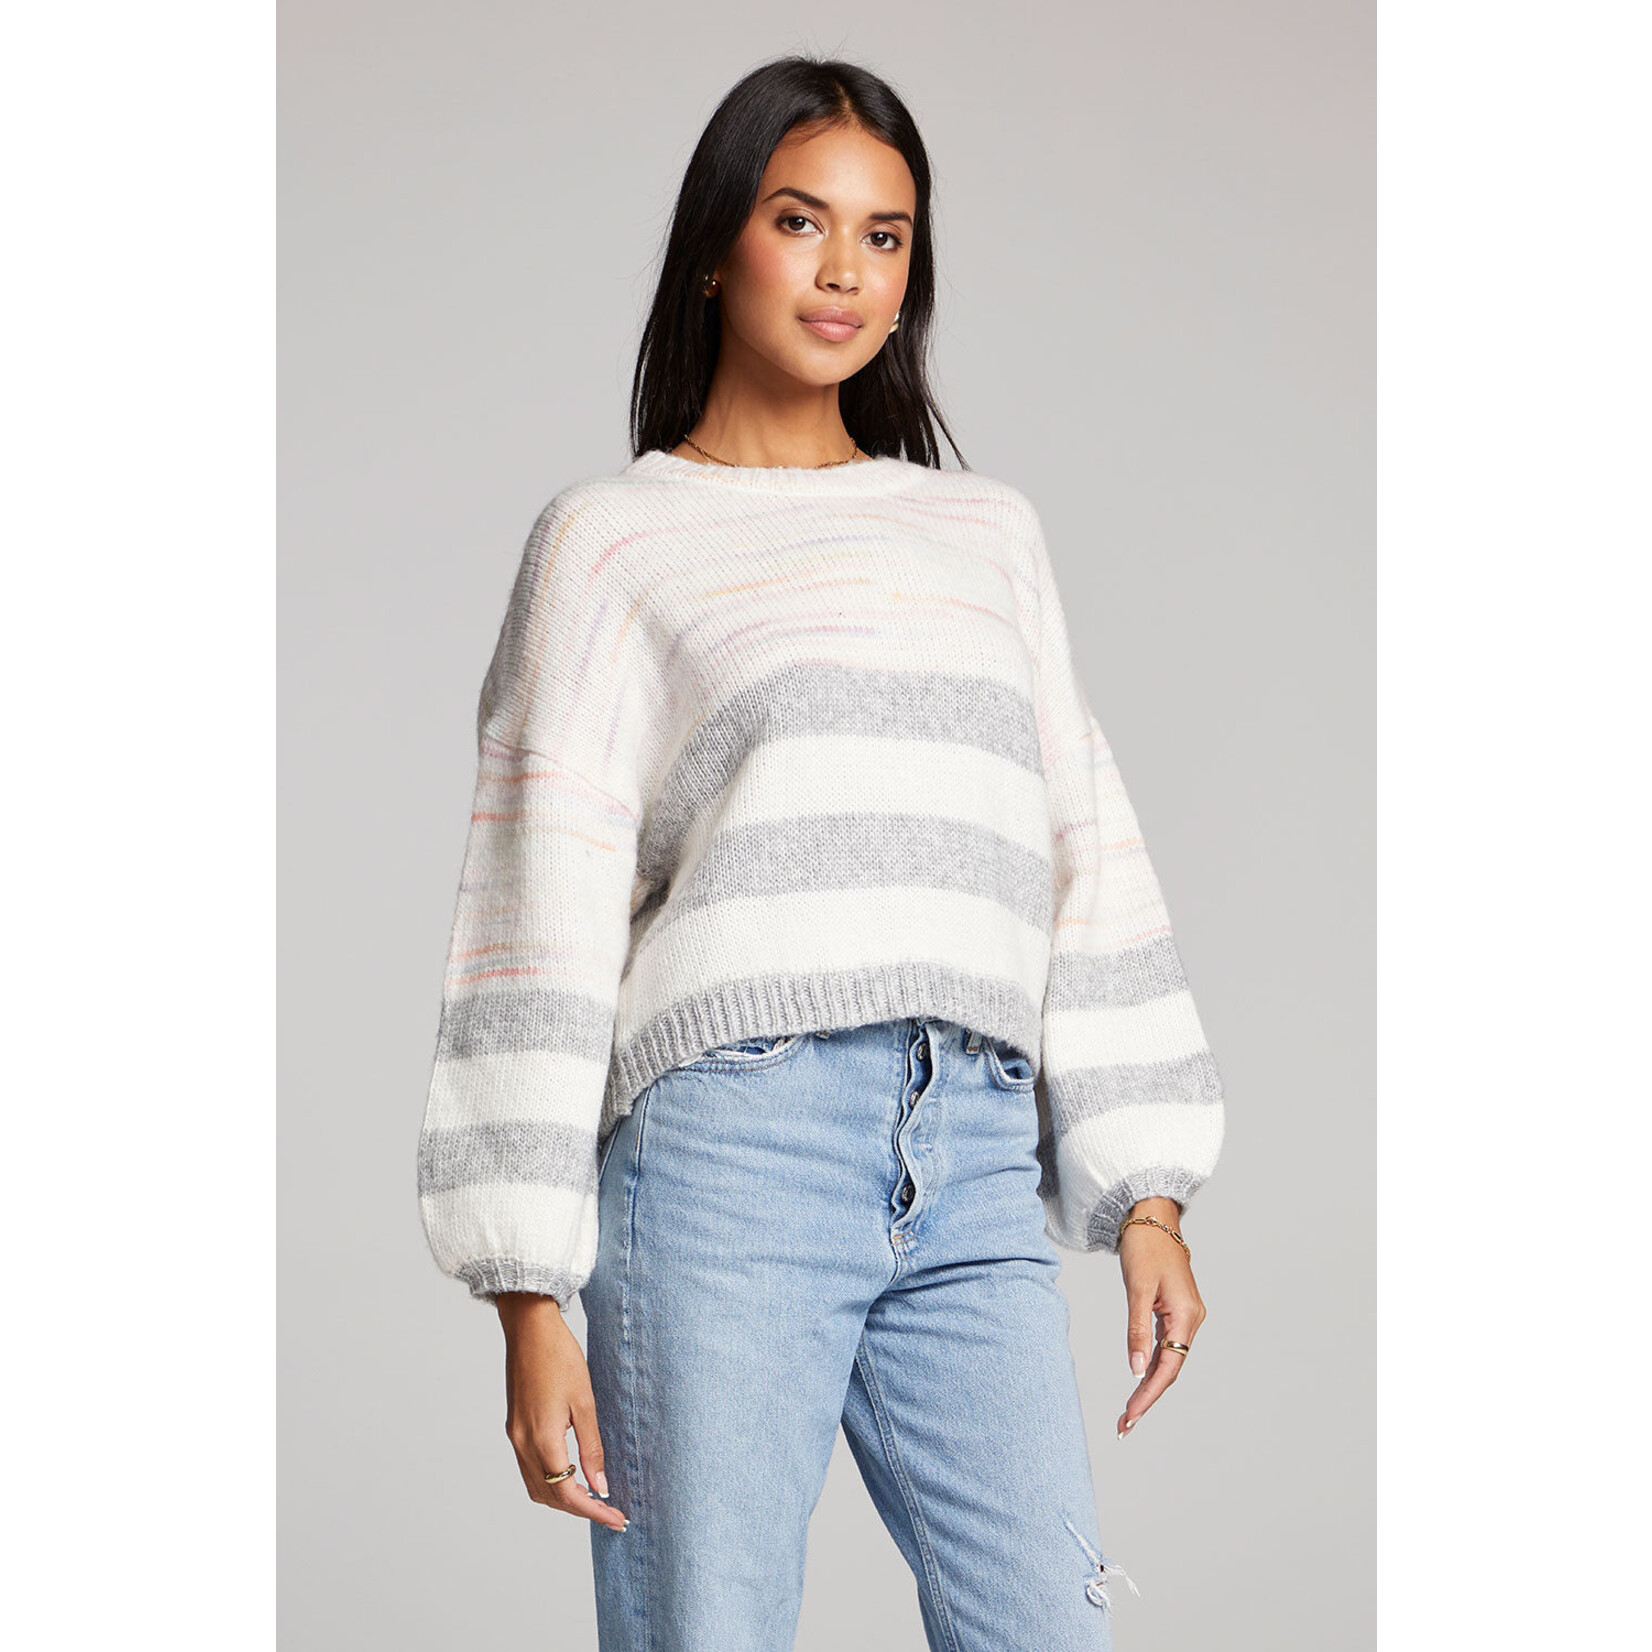 Astola Sweater